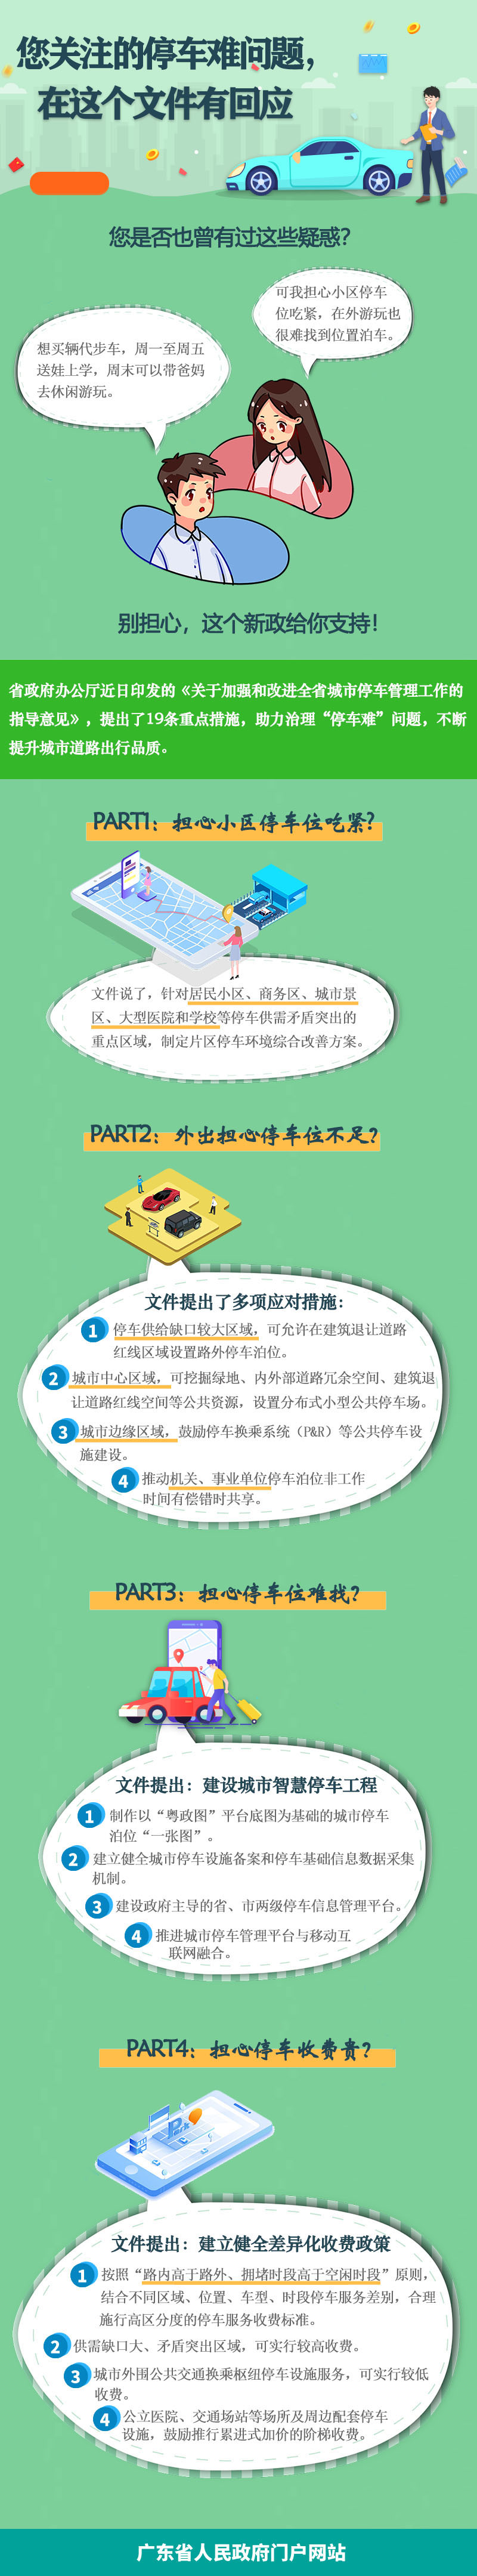 广东省人民政府办公厅关于印发加强和改进全省城市停车管理工作指导意见的通知